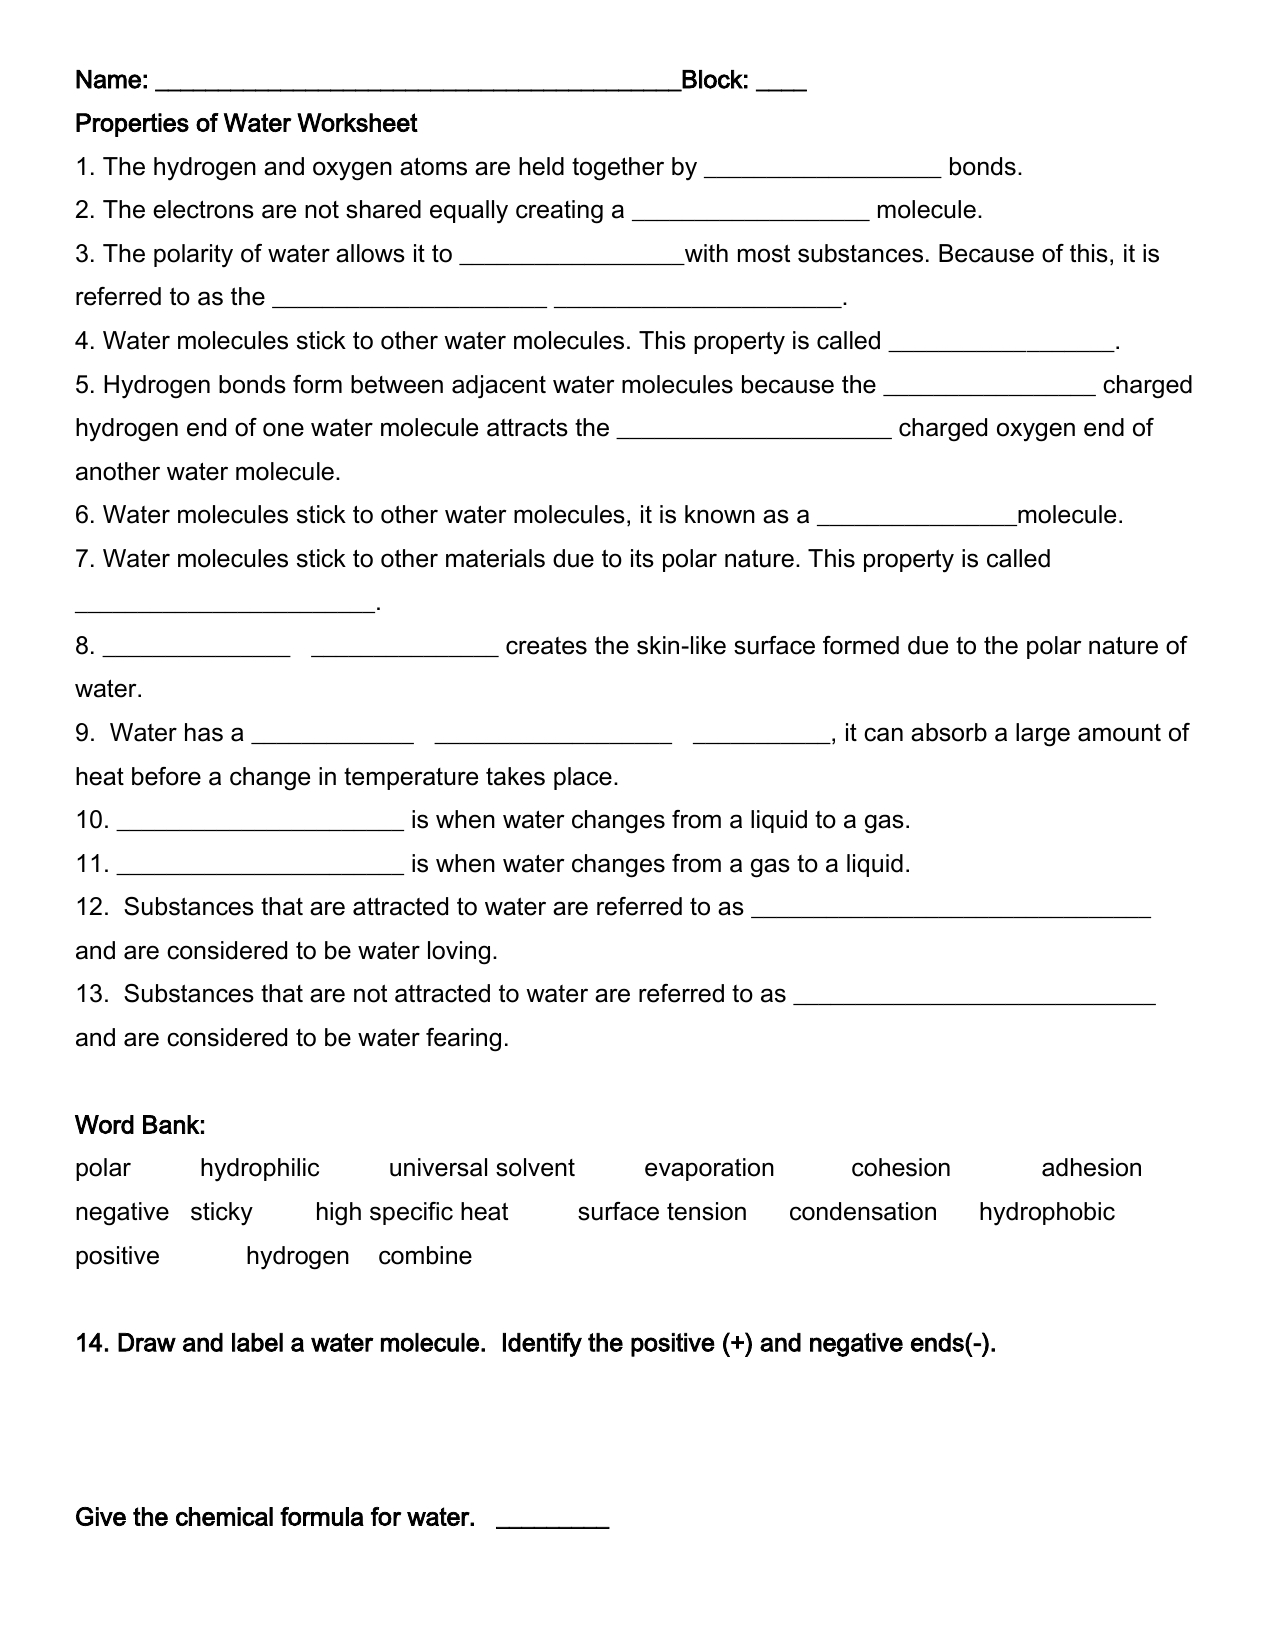 Properties Of Water Worksheet | Weather | Worksheets, Biology - Free Printable Biology Worksheets For High School